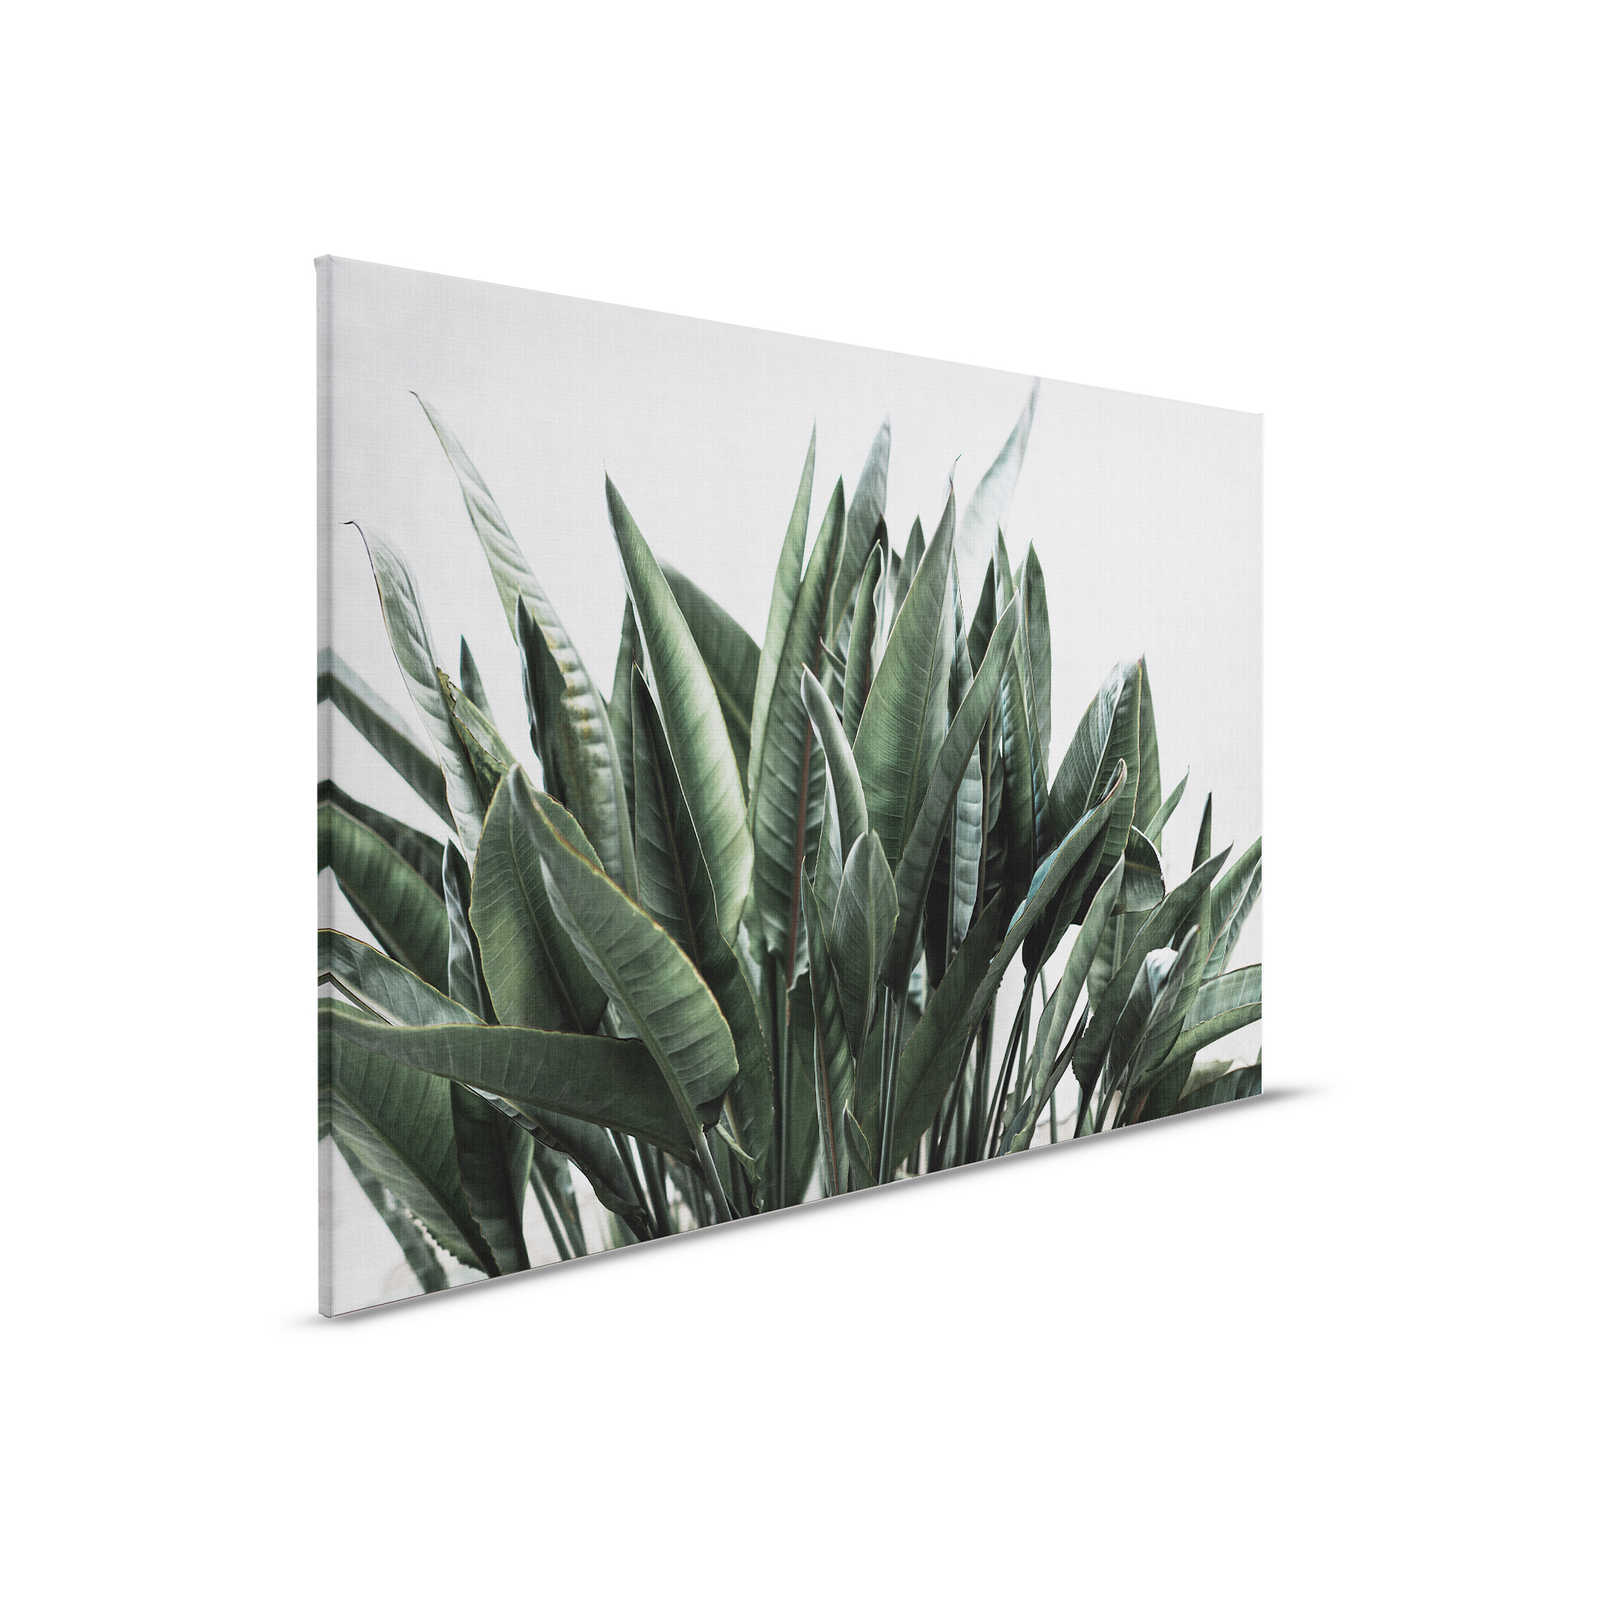 Urban jungle 2 - Feuilles de palmier toile, structure lin naturel plantes exotiques - 0,90 m x 0,60 m
